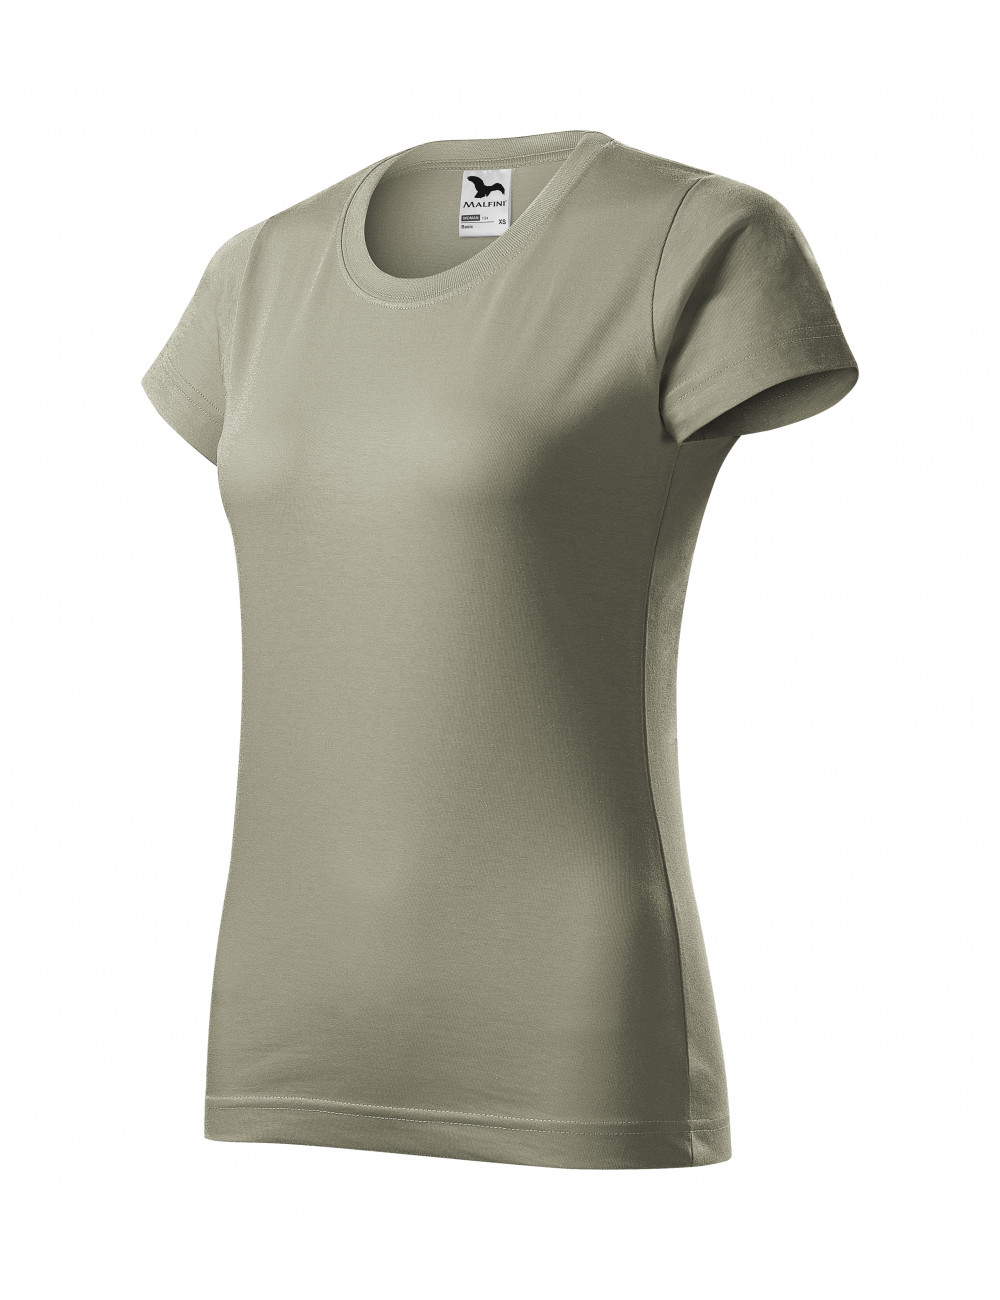 Women`s t-shirt basic 134 light khaki Adler Malfini